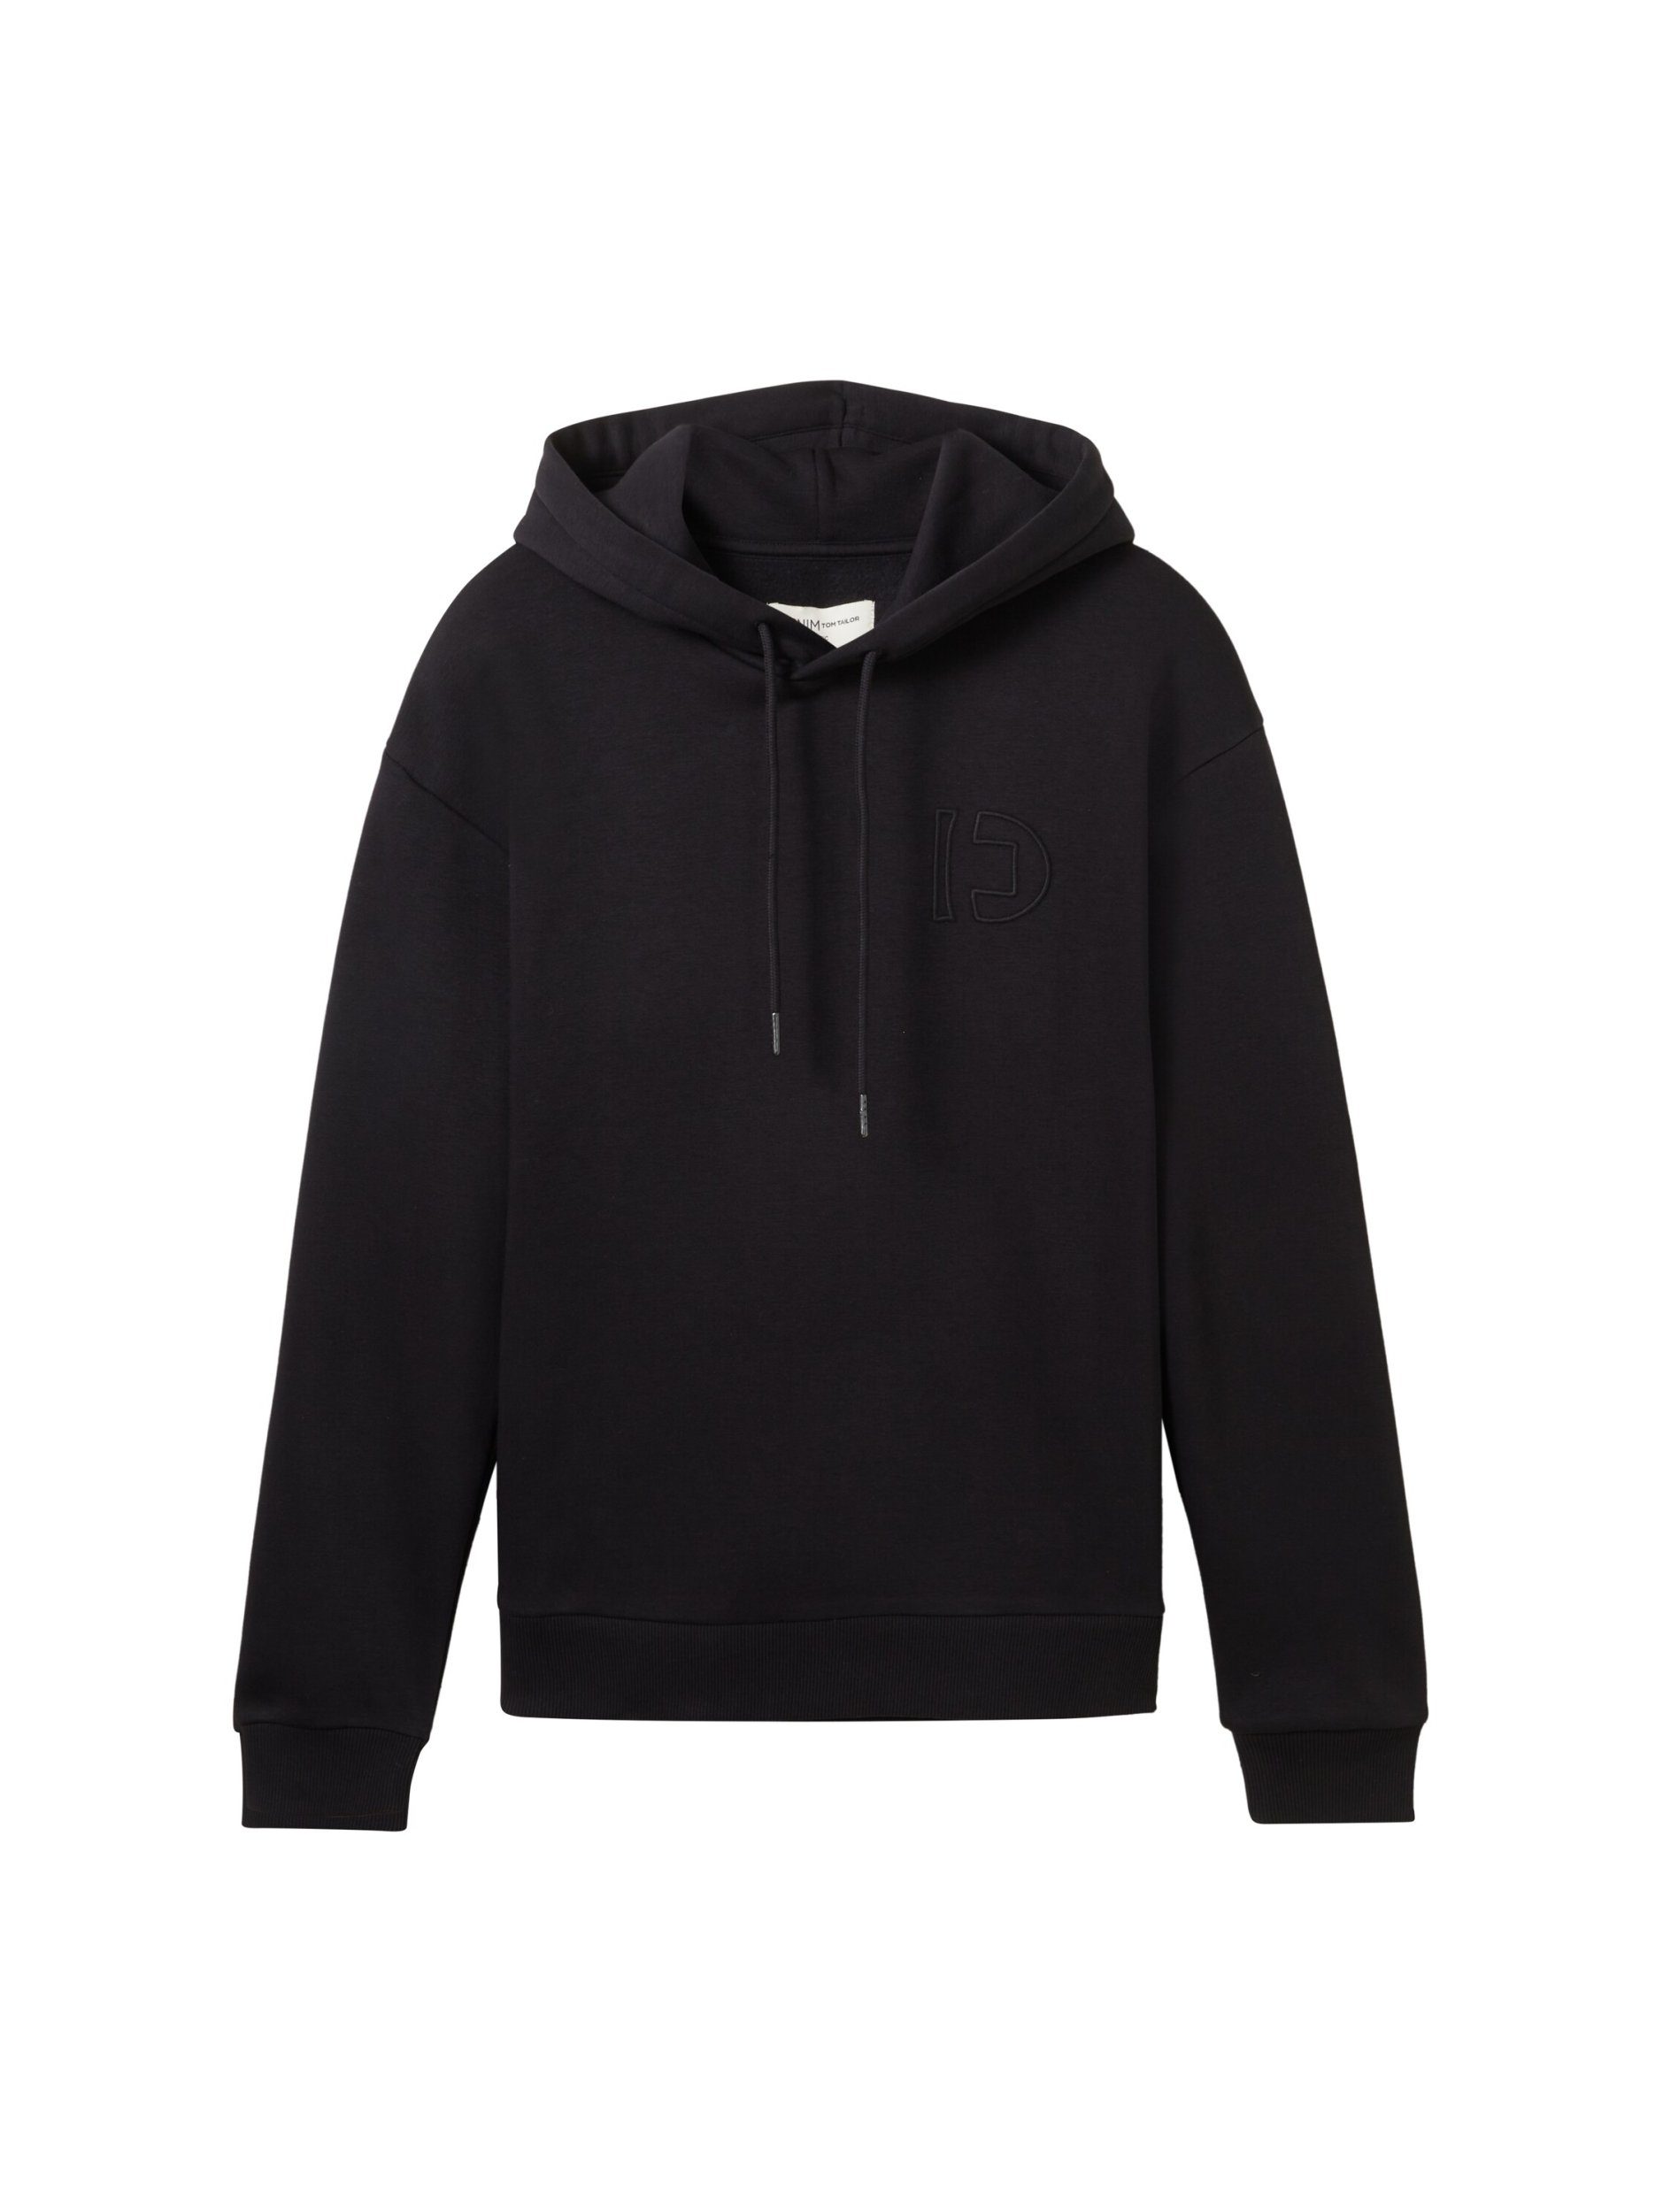 TOM TAILOR Denim Sweatshirt hoodie with embroidery Black